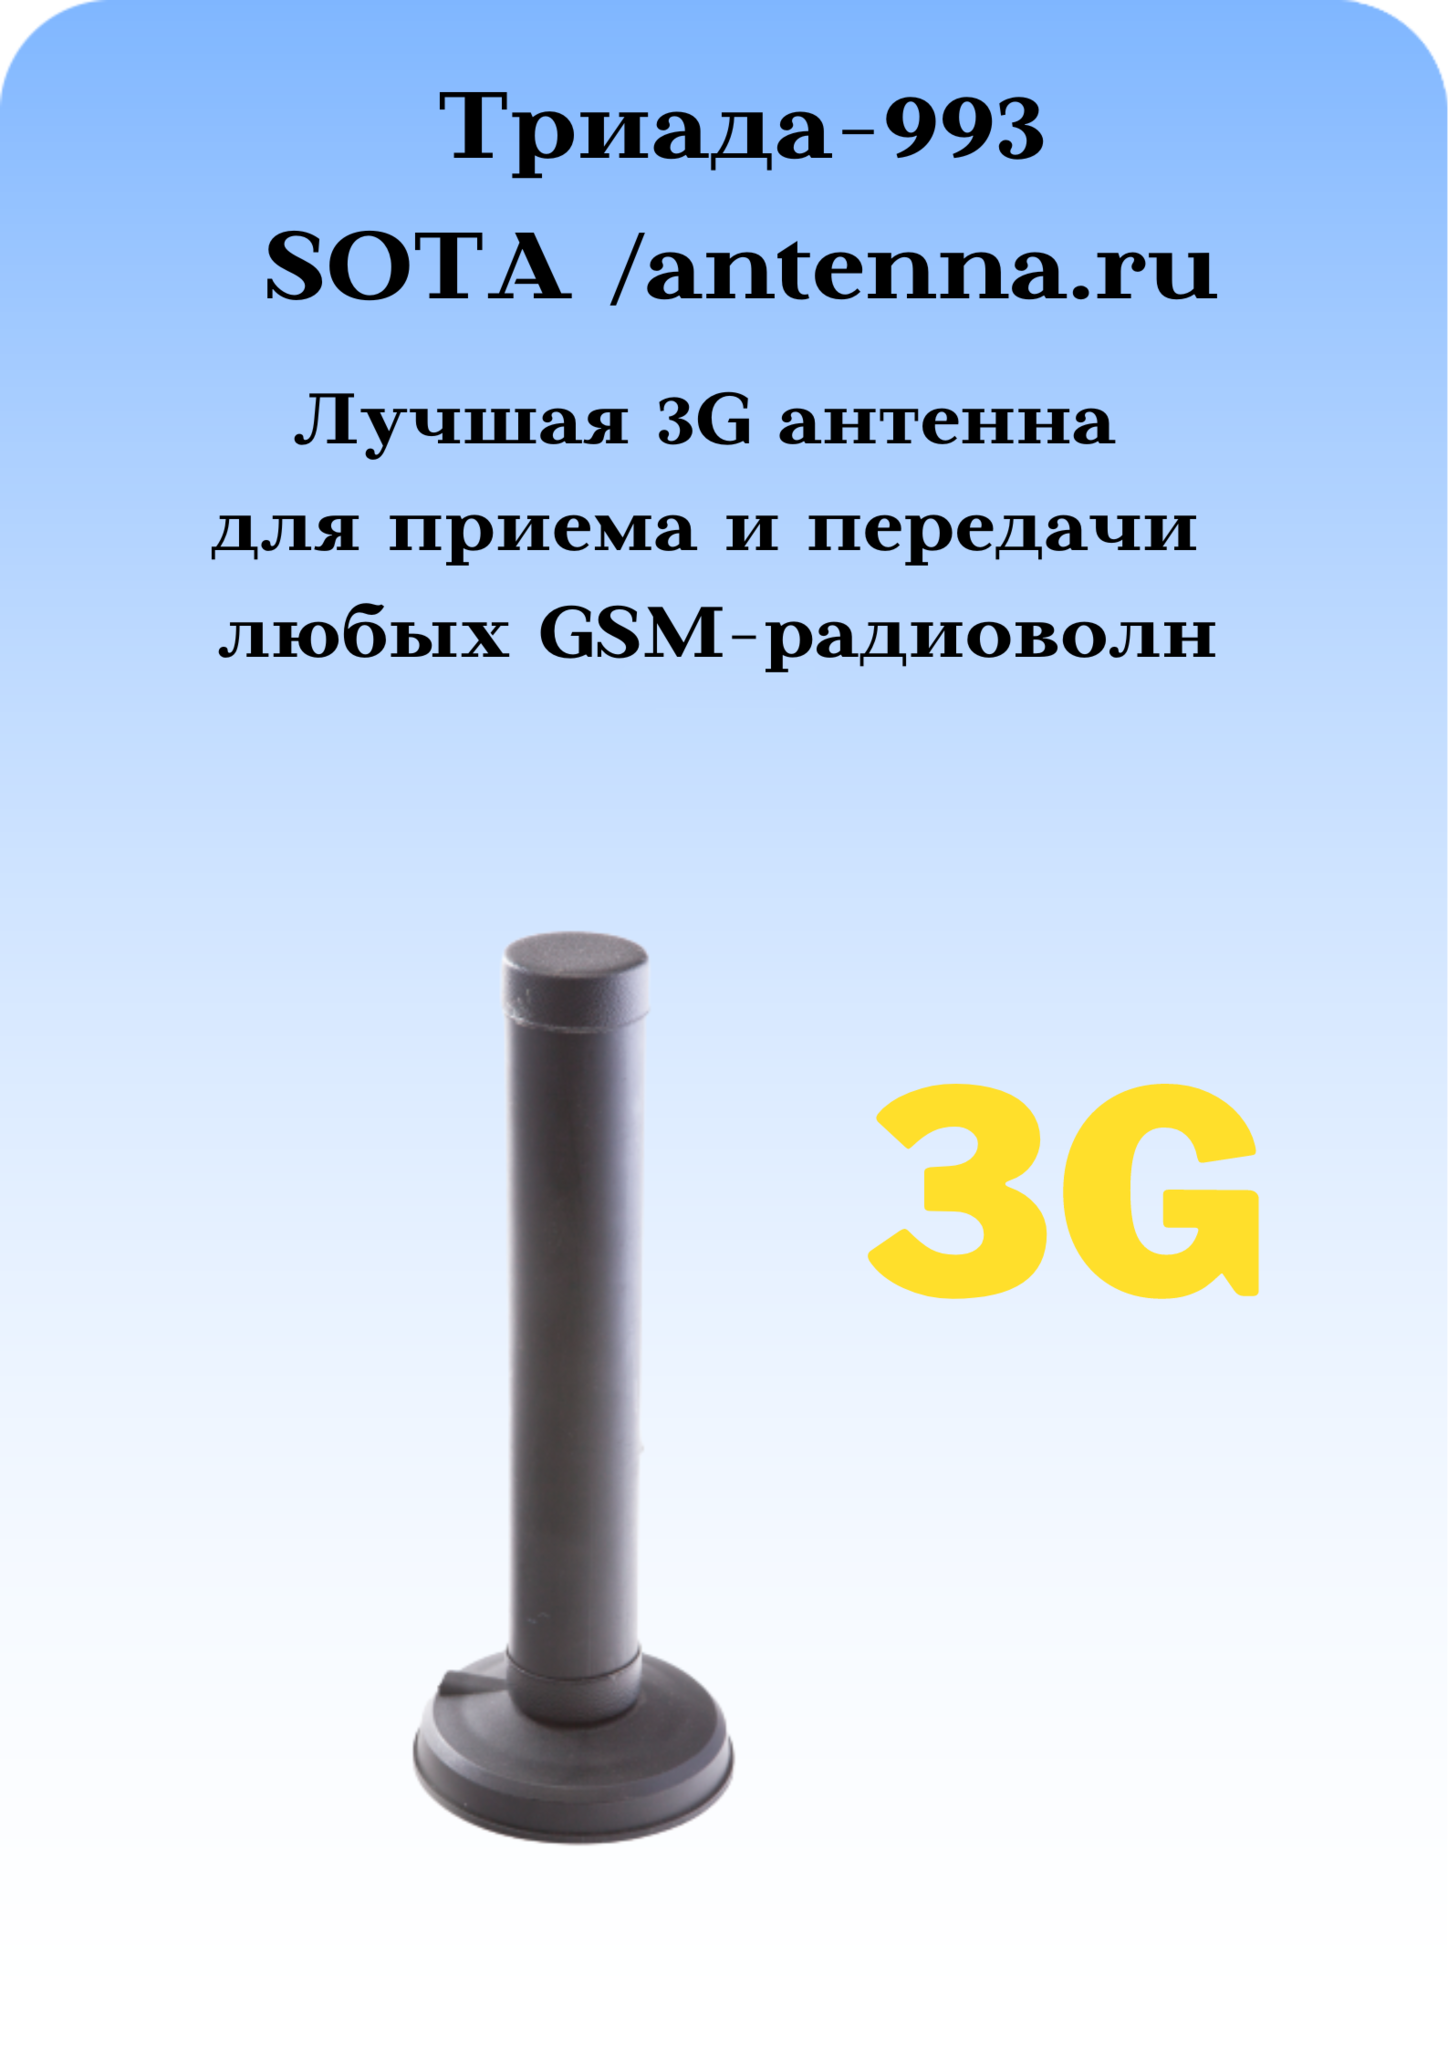 Триада-993 SOTA/antenna.ru. Антенна 3G/1800/900МГц с большим усилением всенаправленная на магните